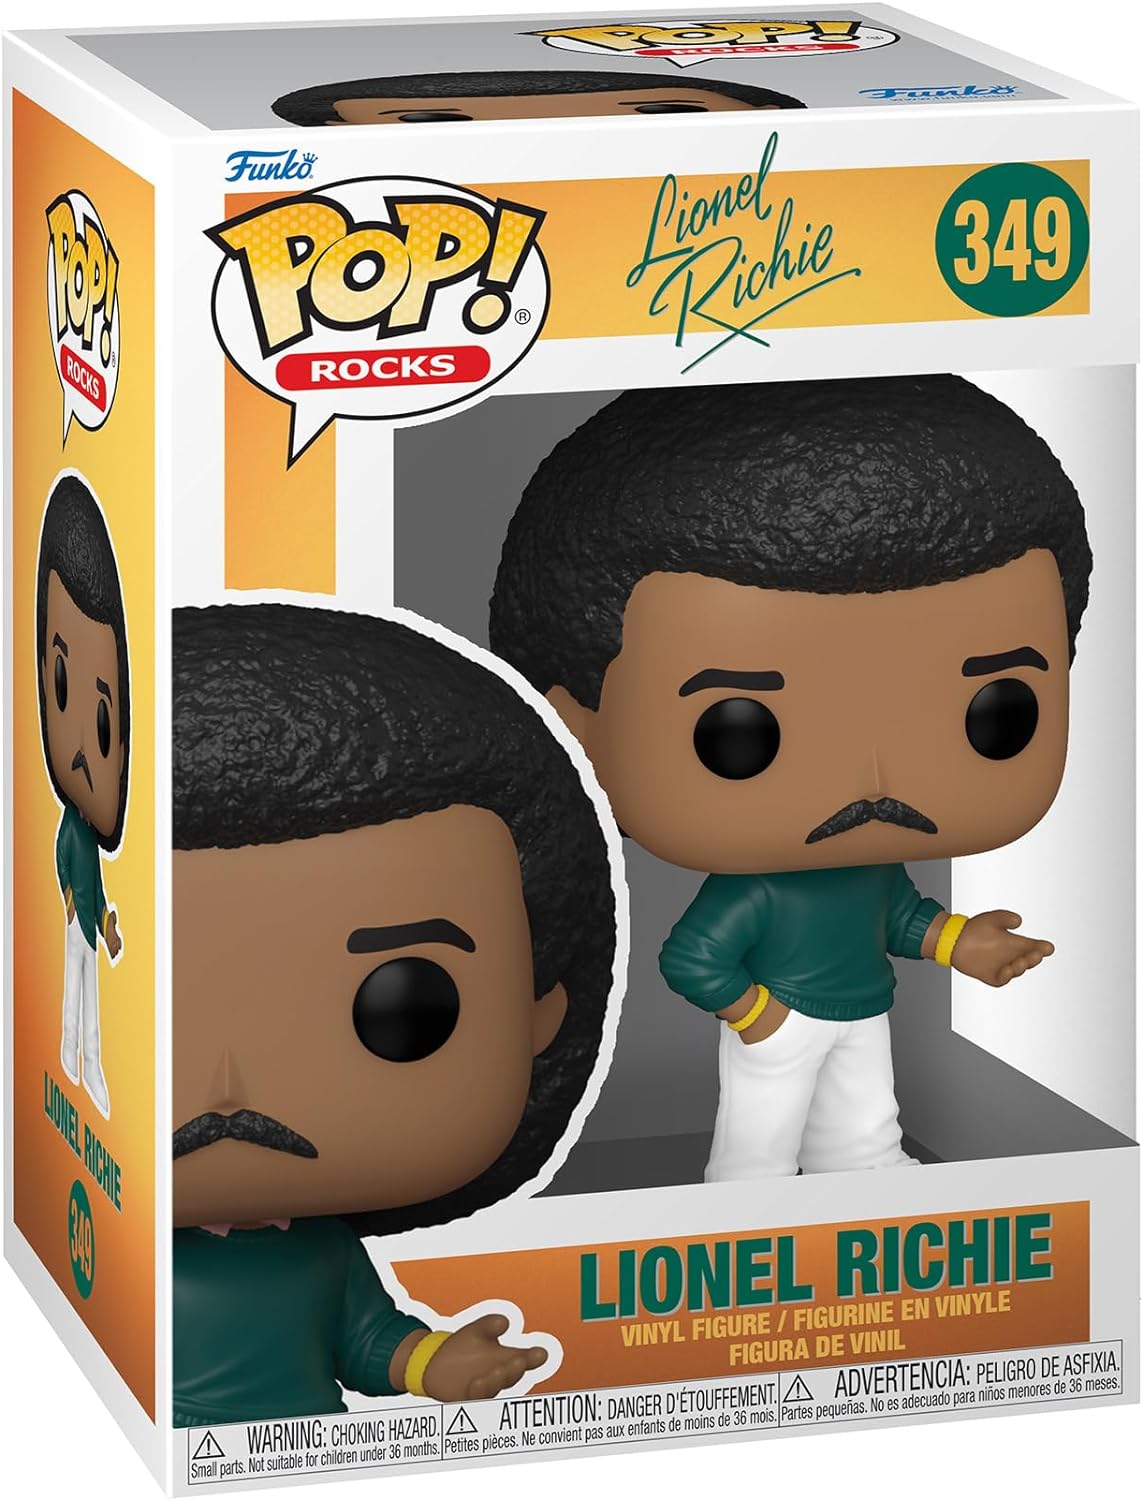 Lionel Richie: Funko Pop! Rocks - Lionel Richie (Vinyl Figure 349)